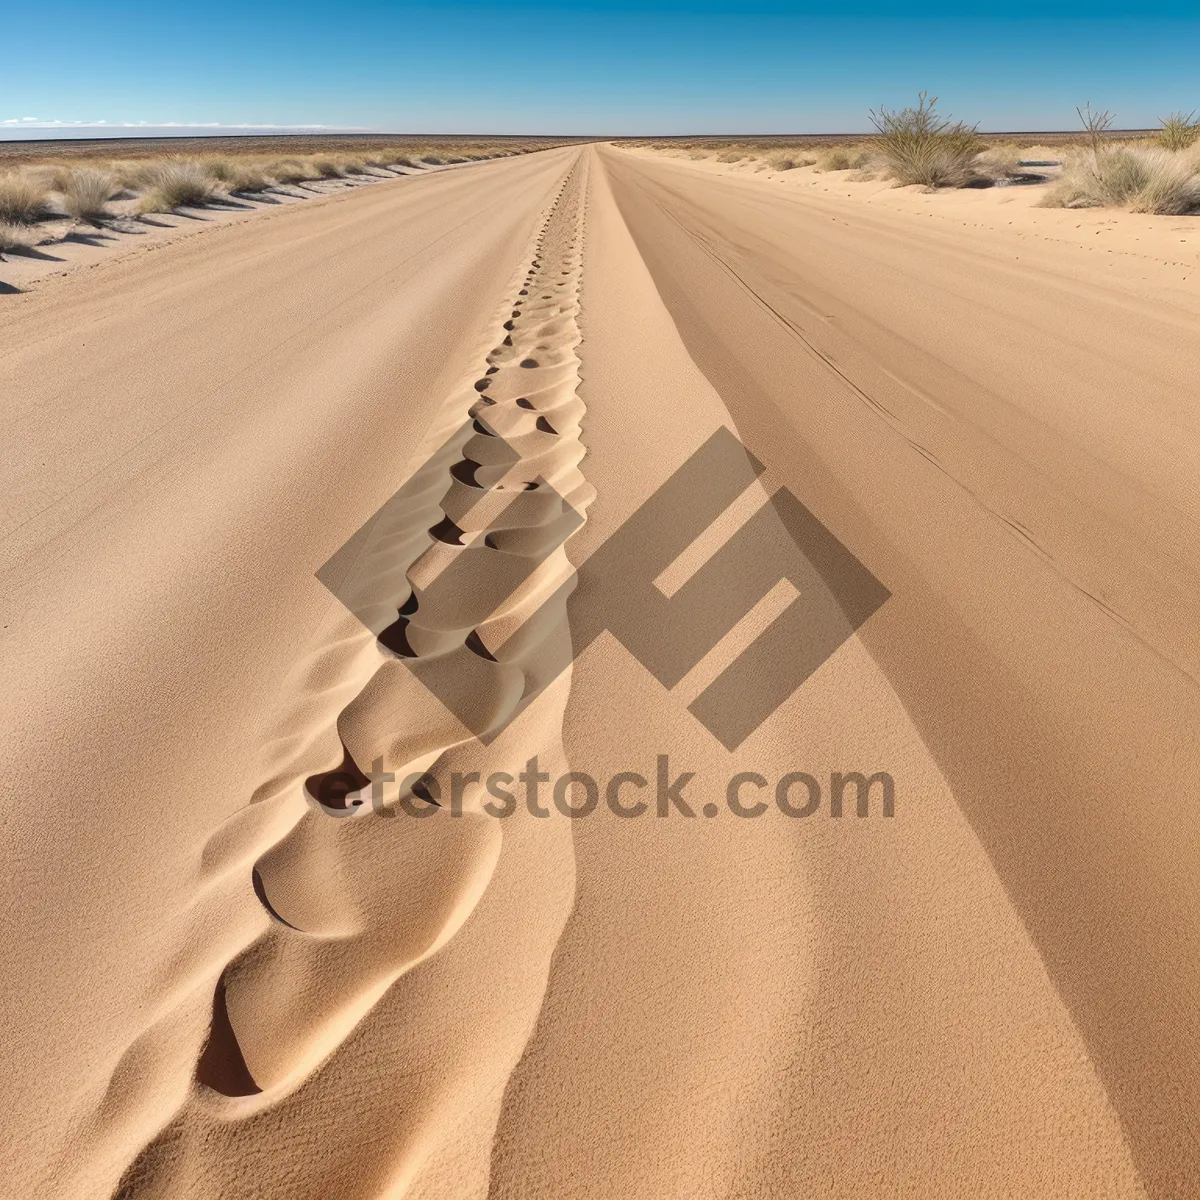 Picture of Desert Road - Dune Adventure